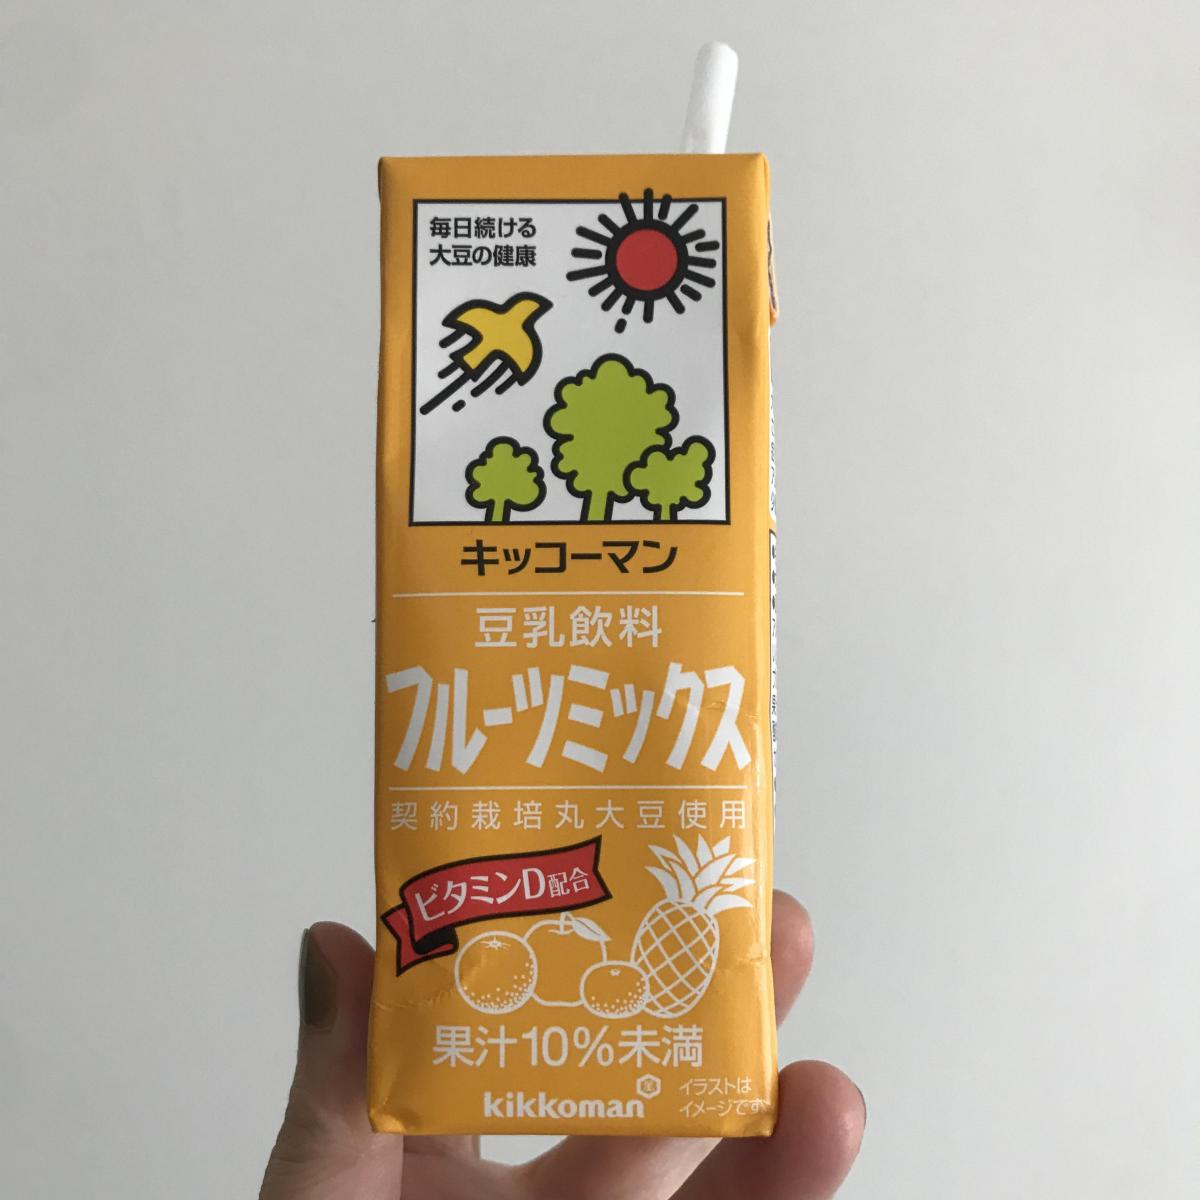 キッコーマン 豆乳飲料 フルーツミックスの商品ページ